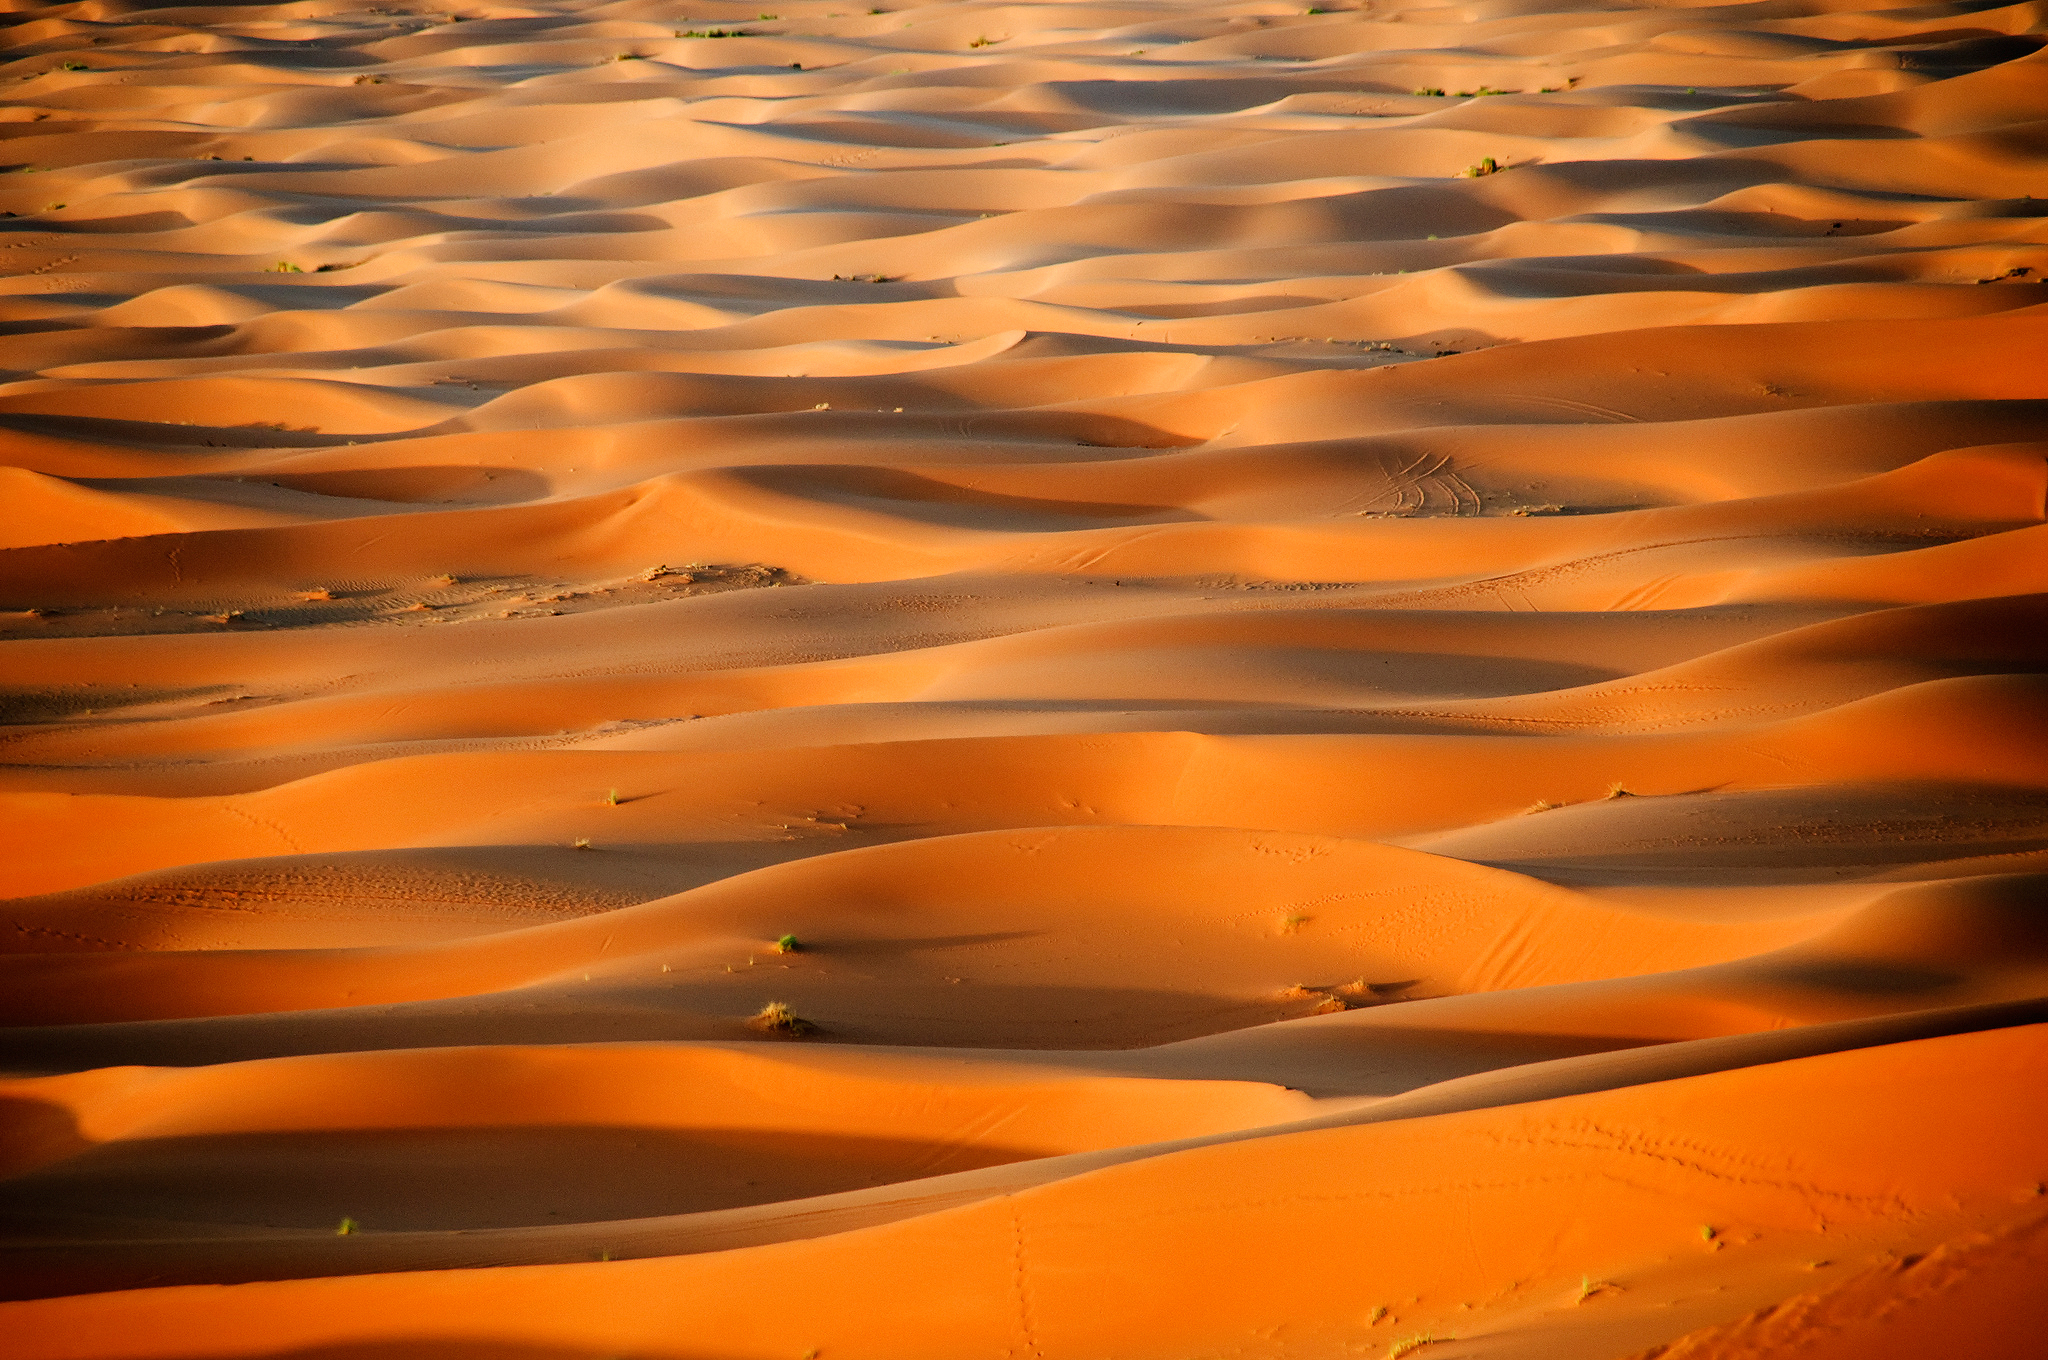 Скачать обои бесплатно Песок, Пустыня, Дюна, Земля/природа картинка на рабочий стол ПК